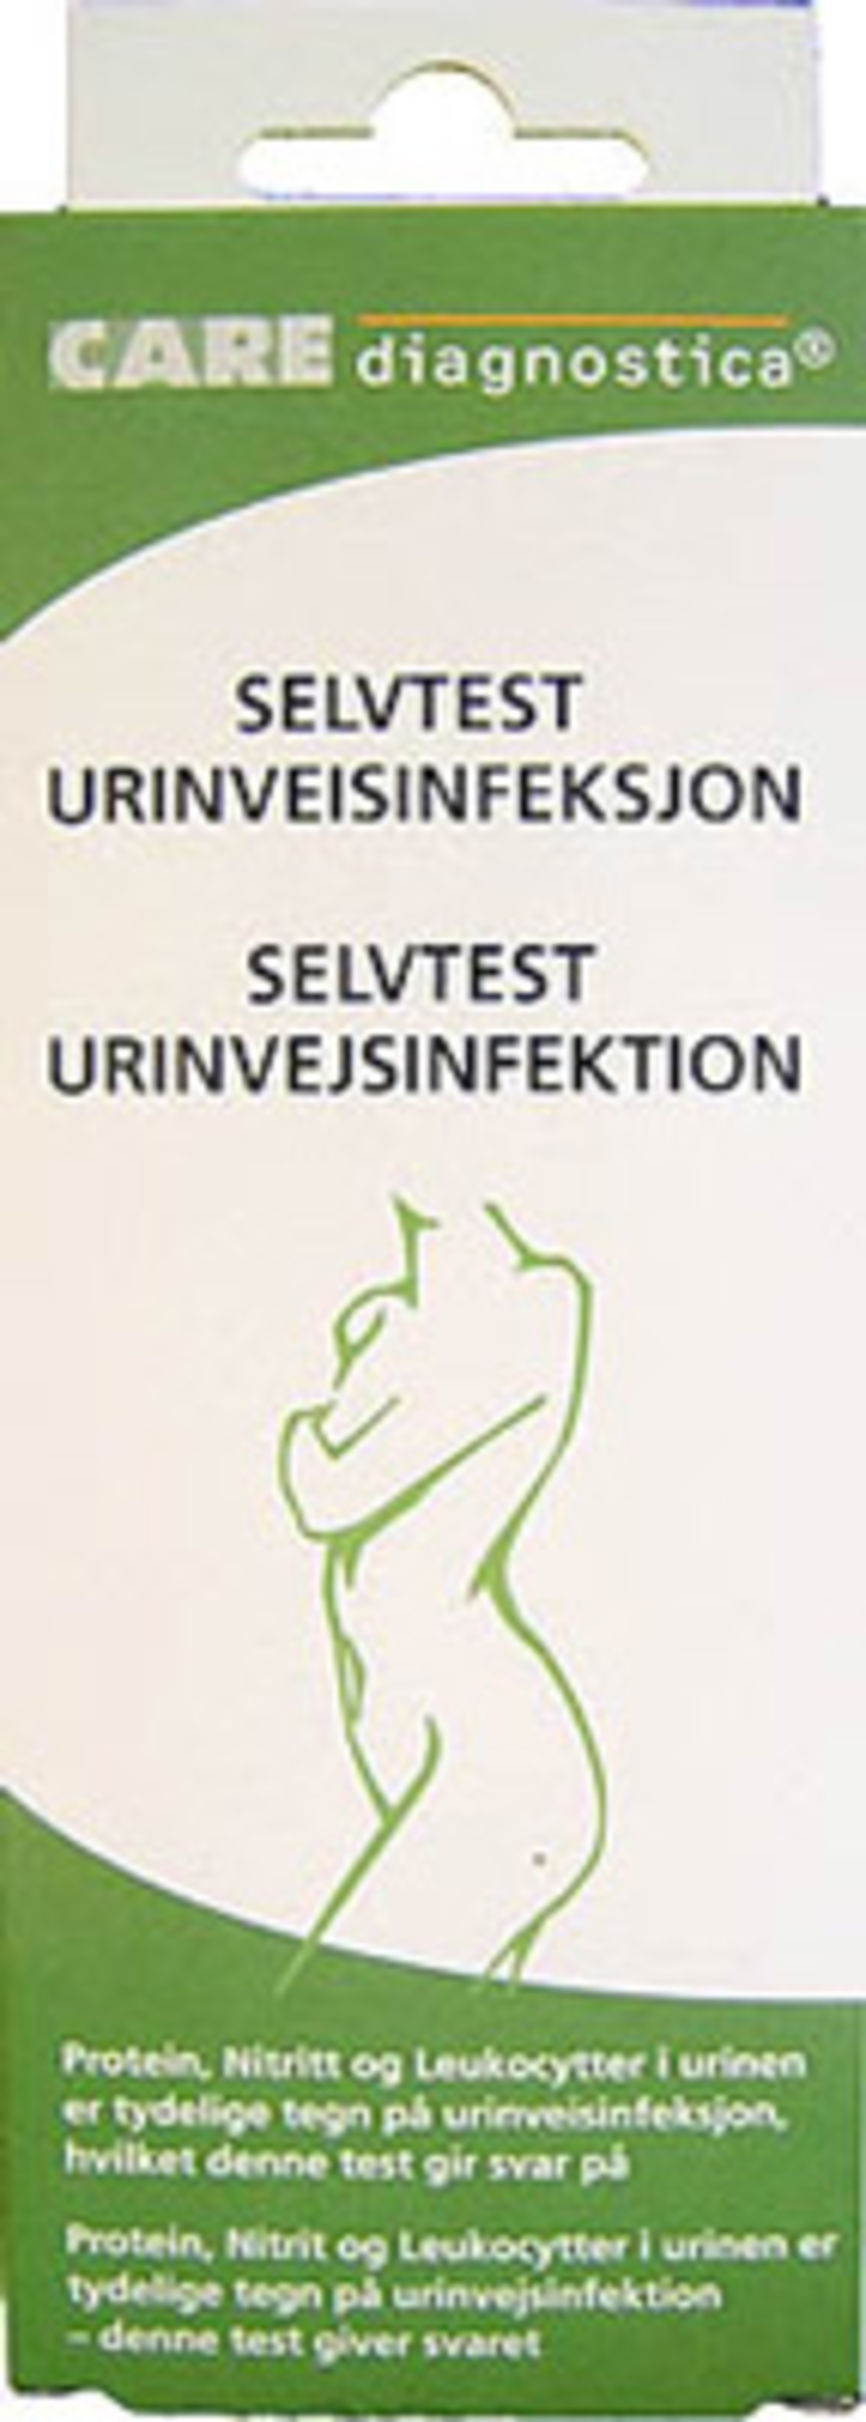 urinveisinfeksjon